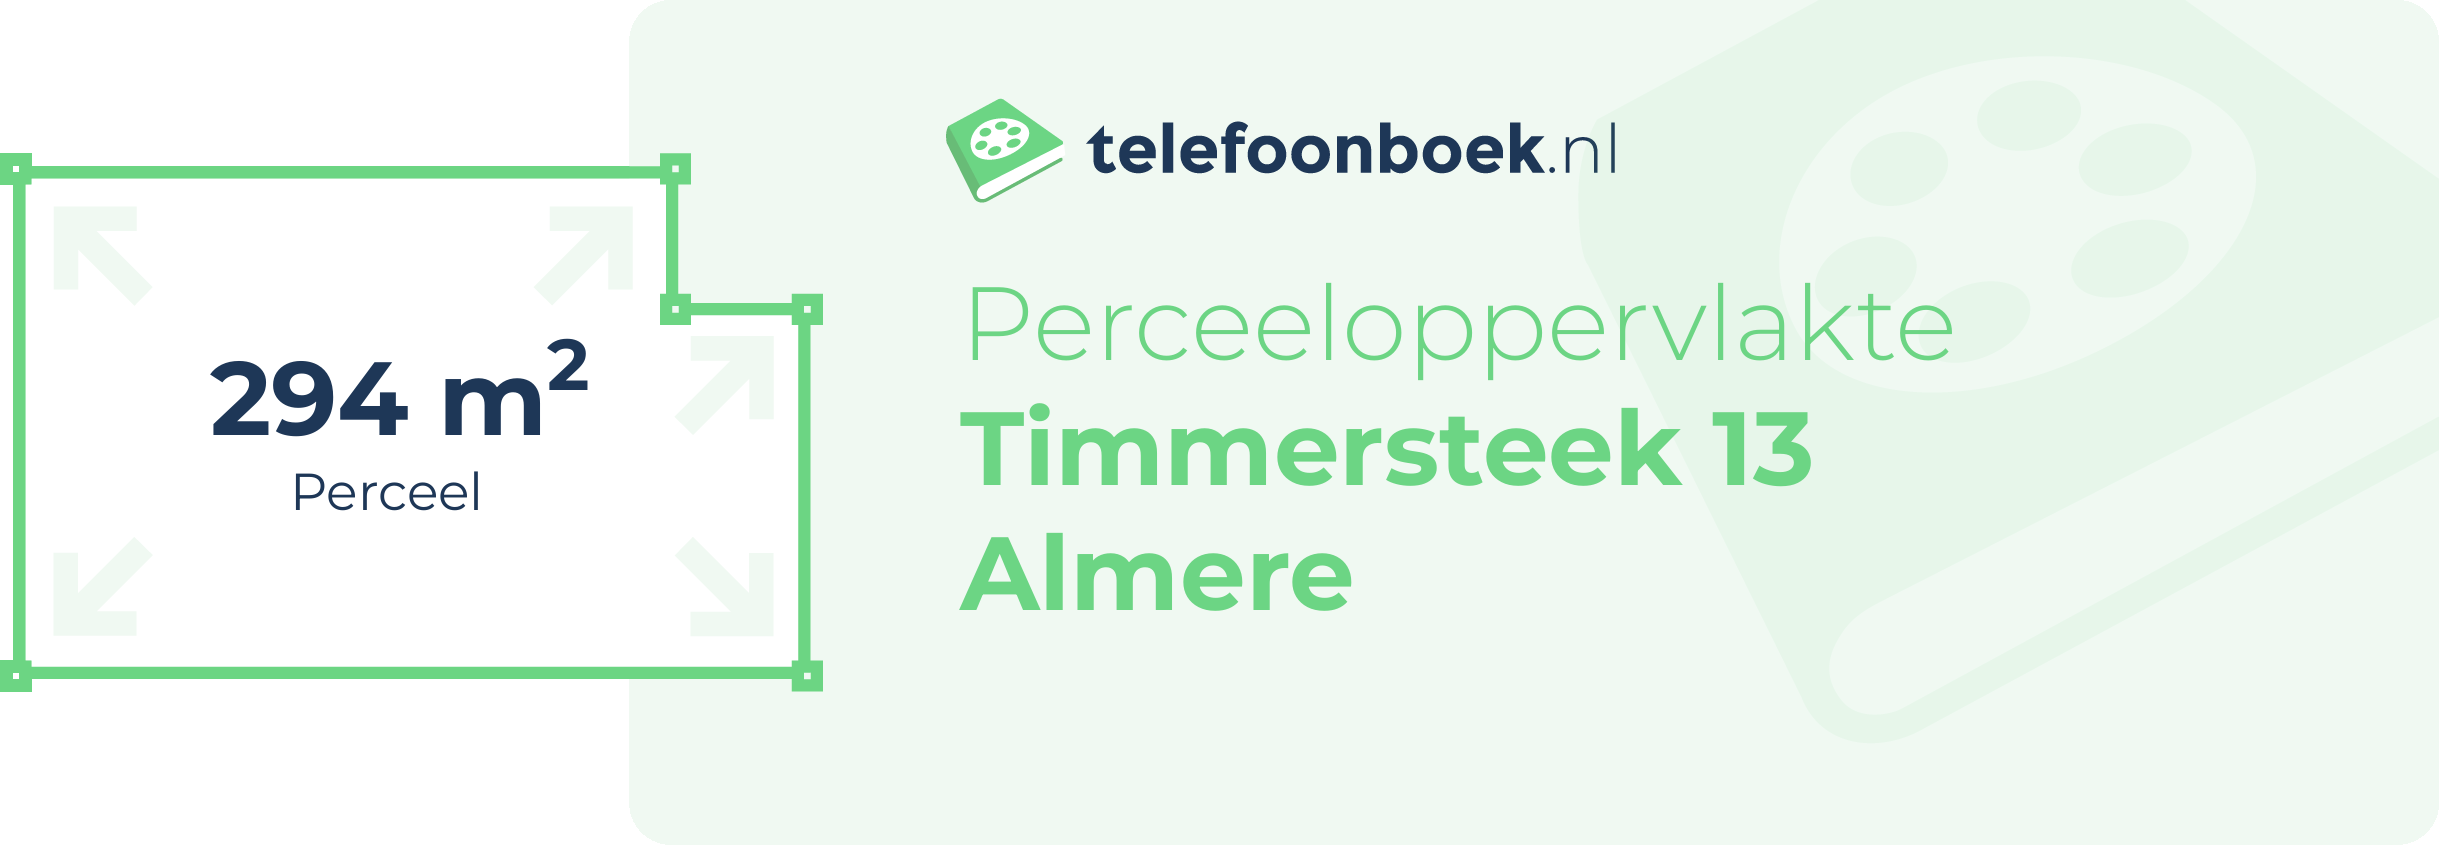 Perceeloppervlakte Timmersteek 13 Almere